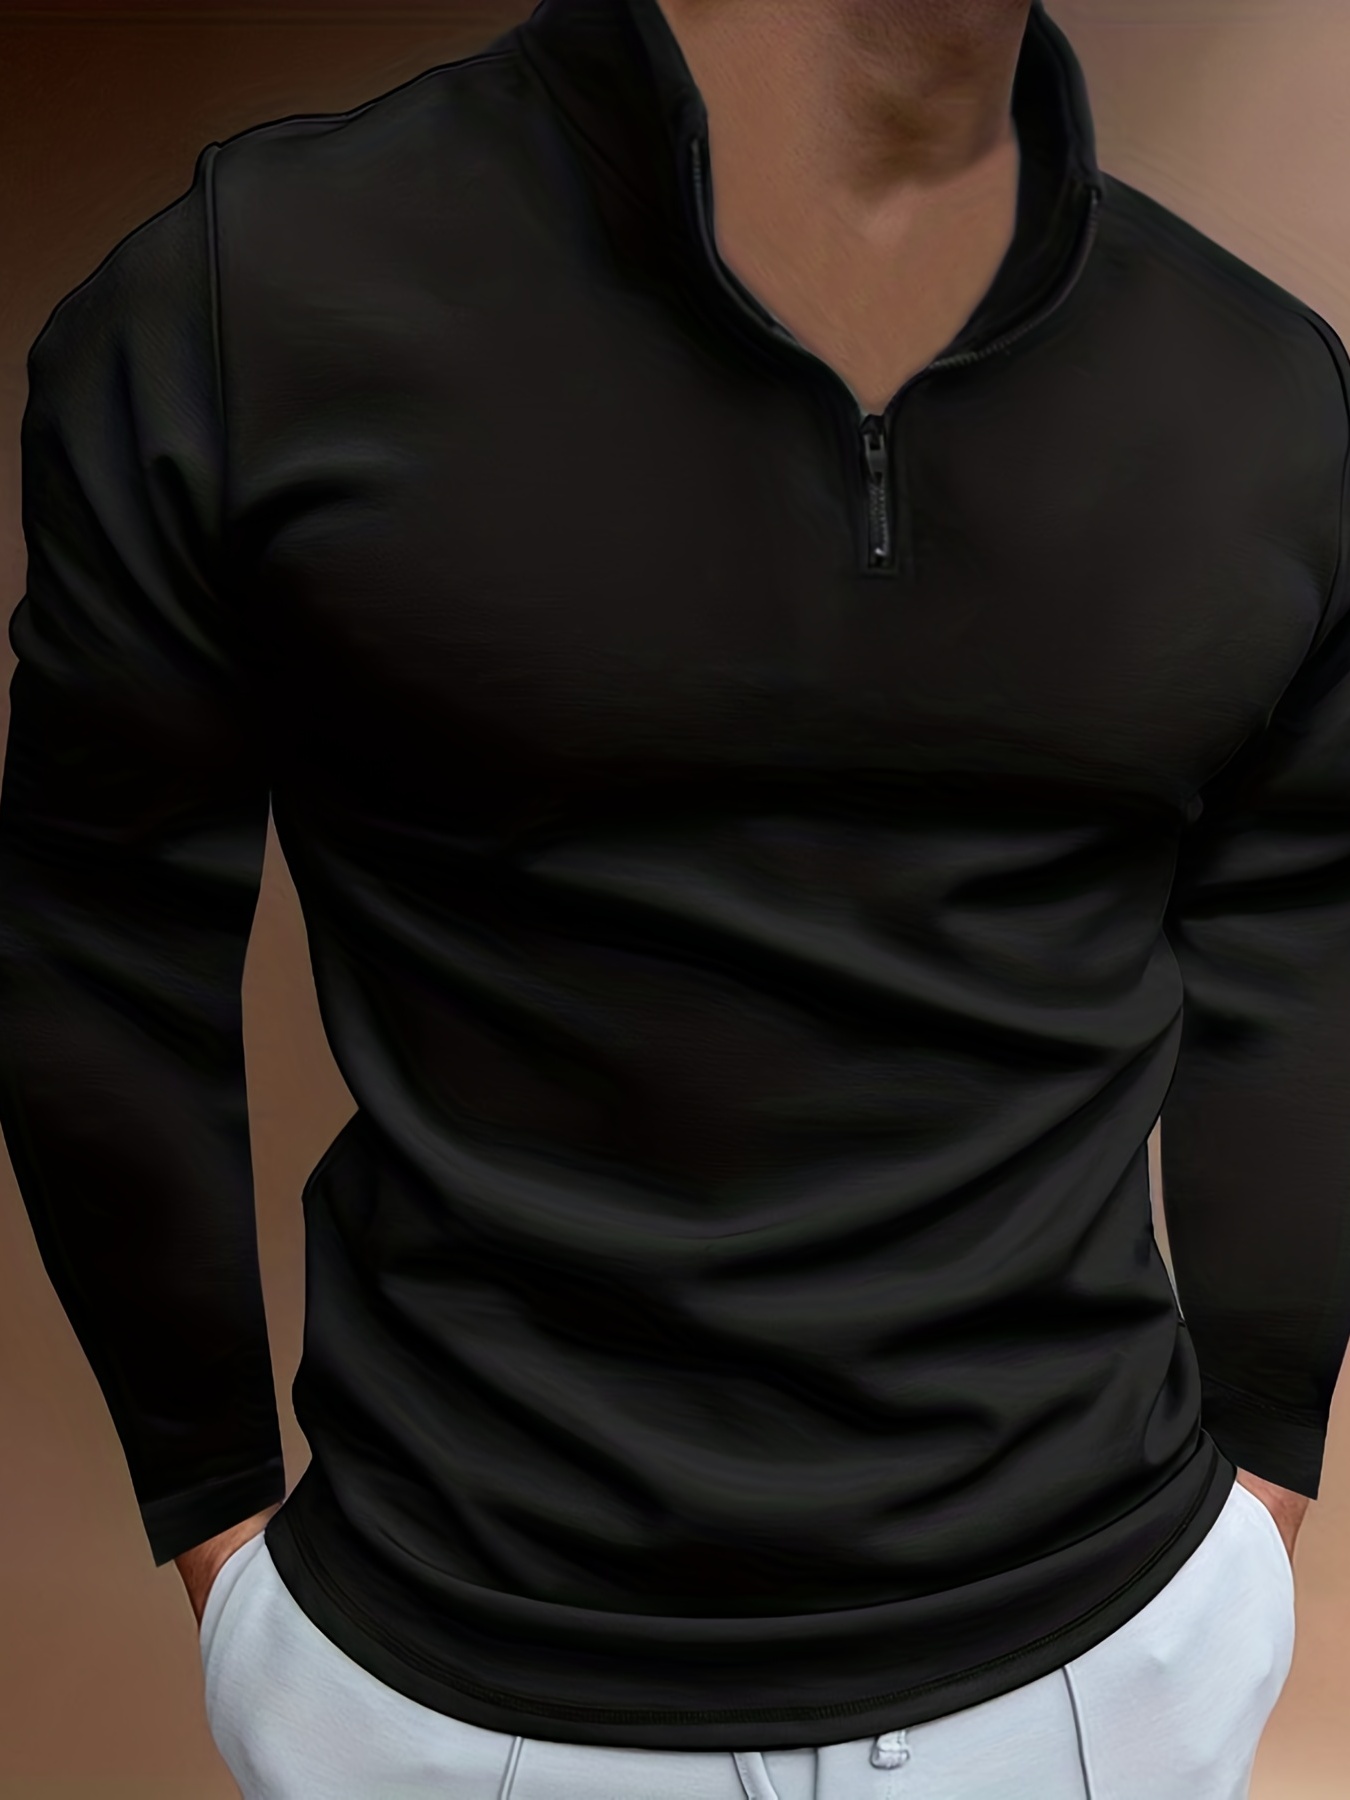  Camisetas de manga larga para hombre, con cremallera